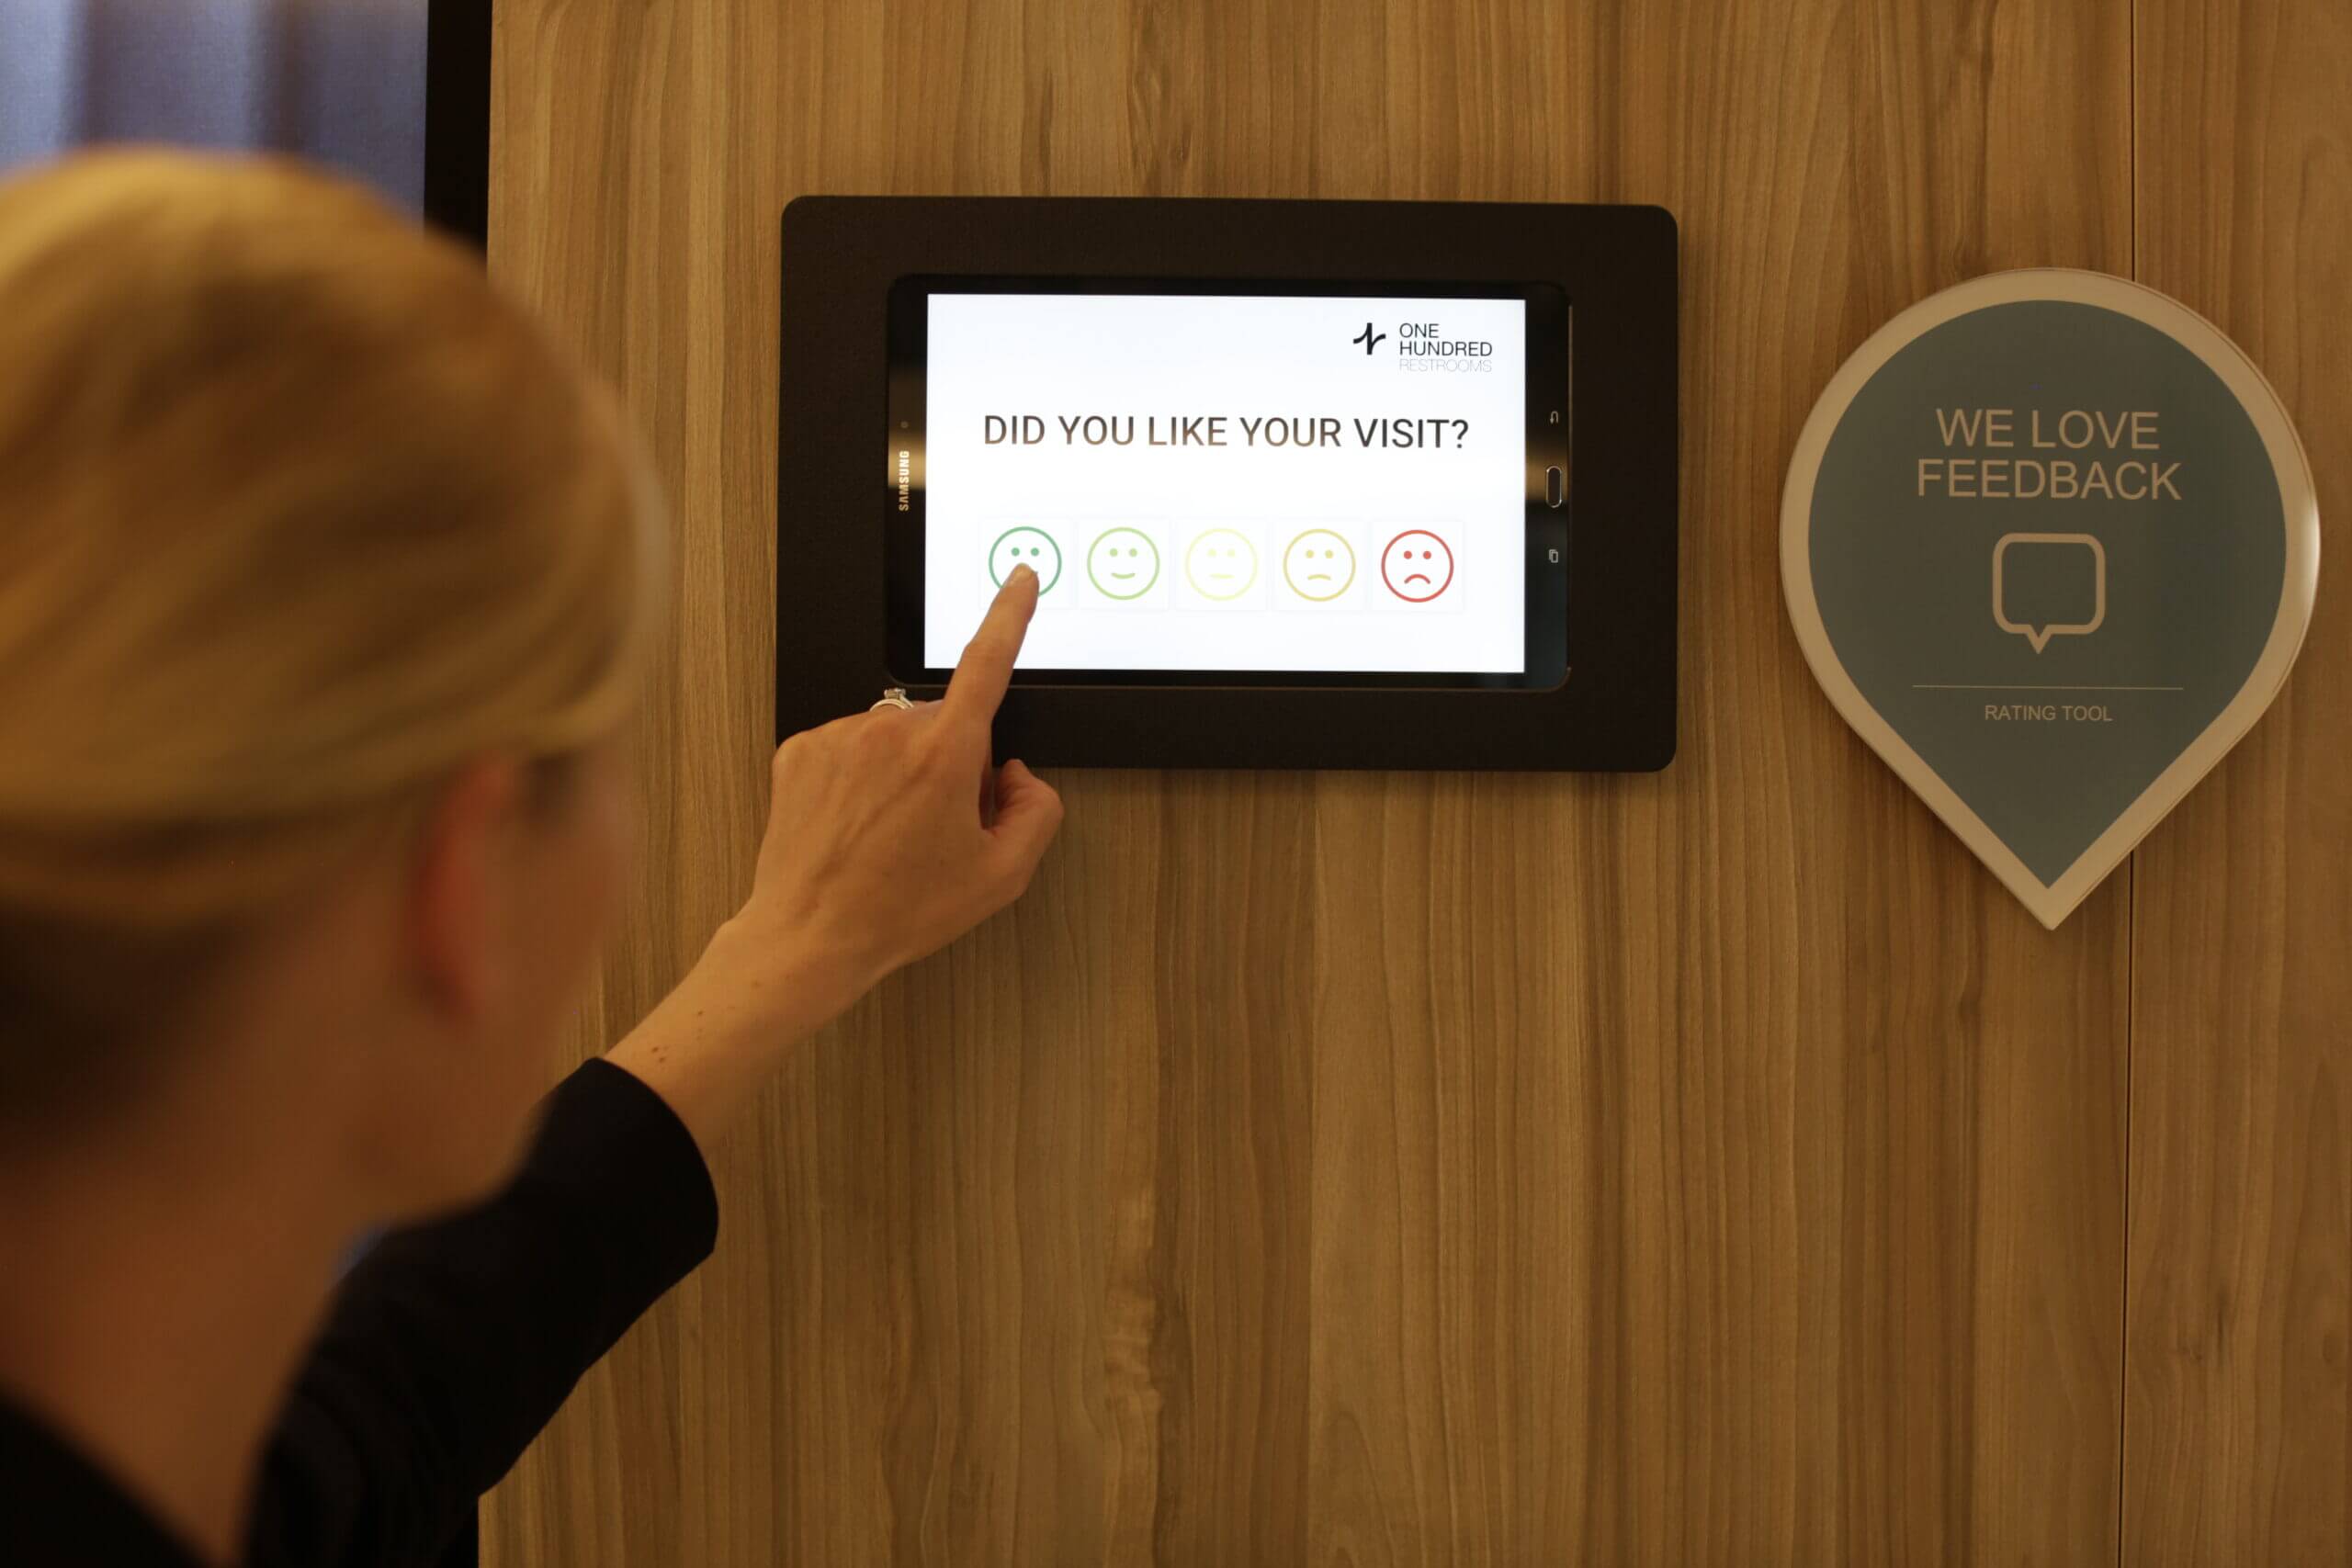 Рейтинговый опрос в туалете дает шанс узнать мнение посетителей, чтобы продолжать улучшать клиентский опыт